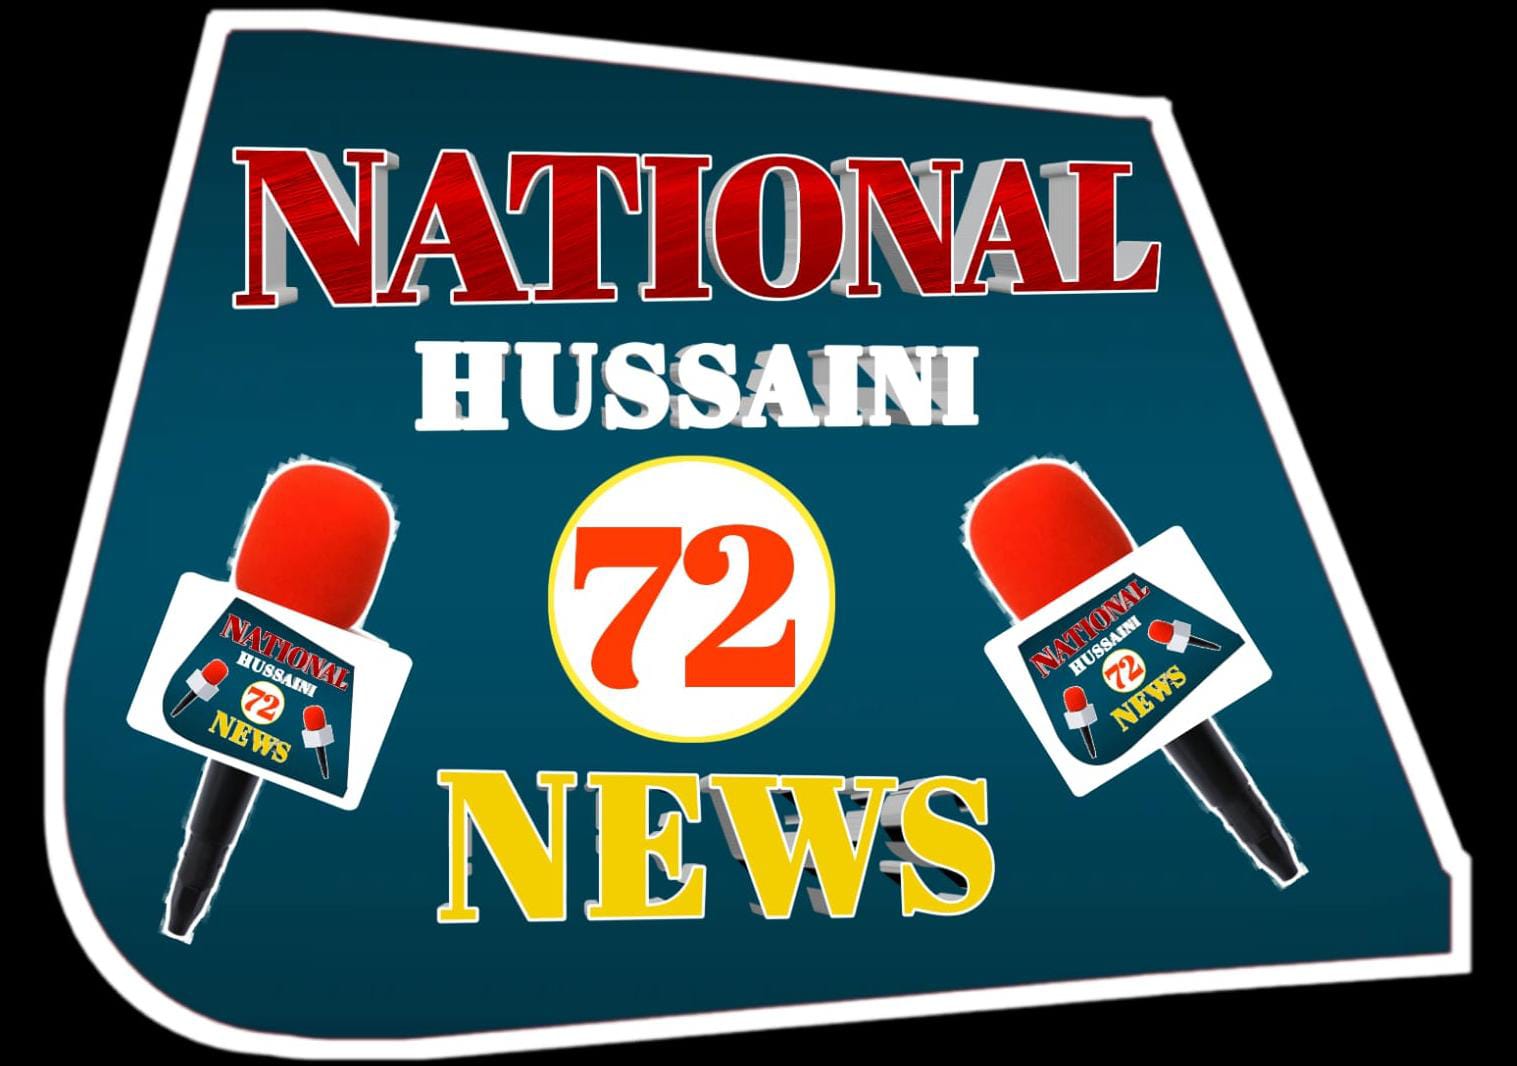 National Hussaini 72 News